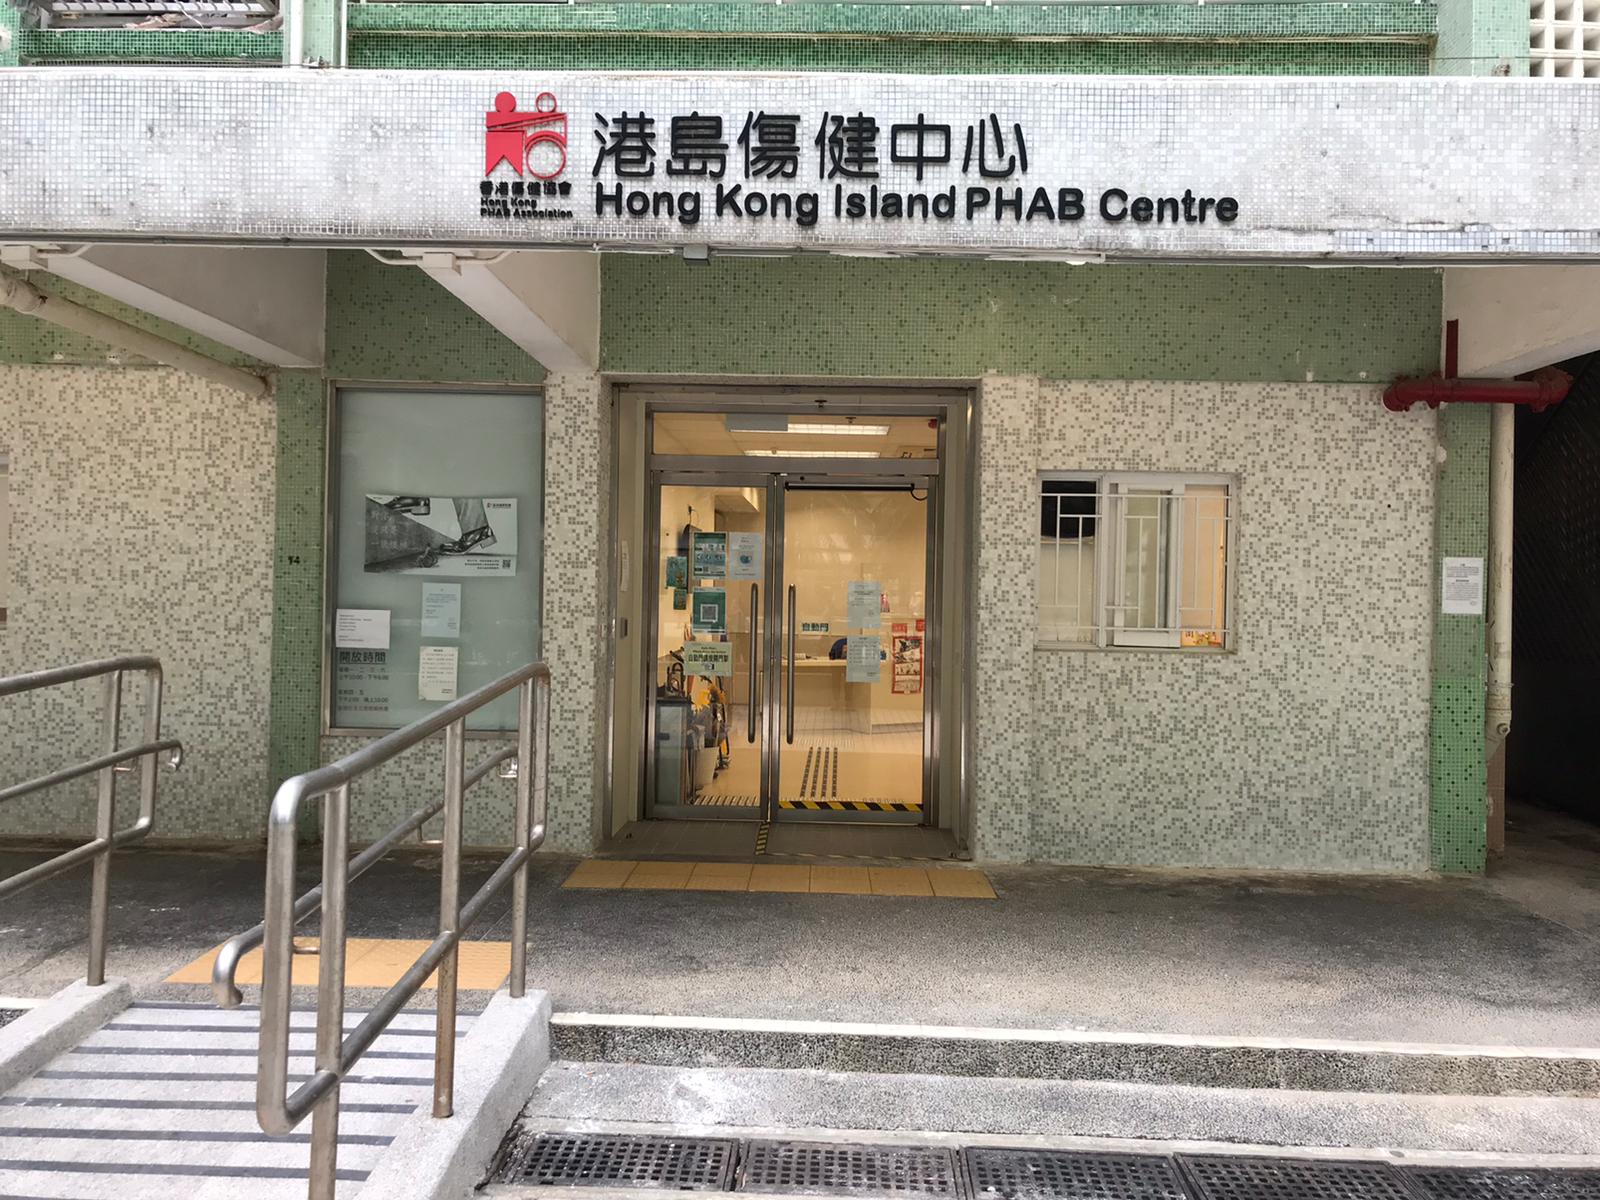 Hong Kong Island PHAB Centre